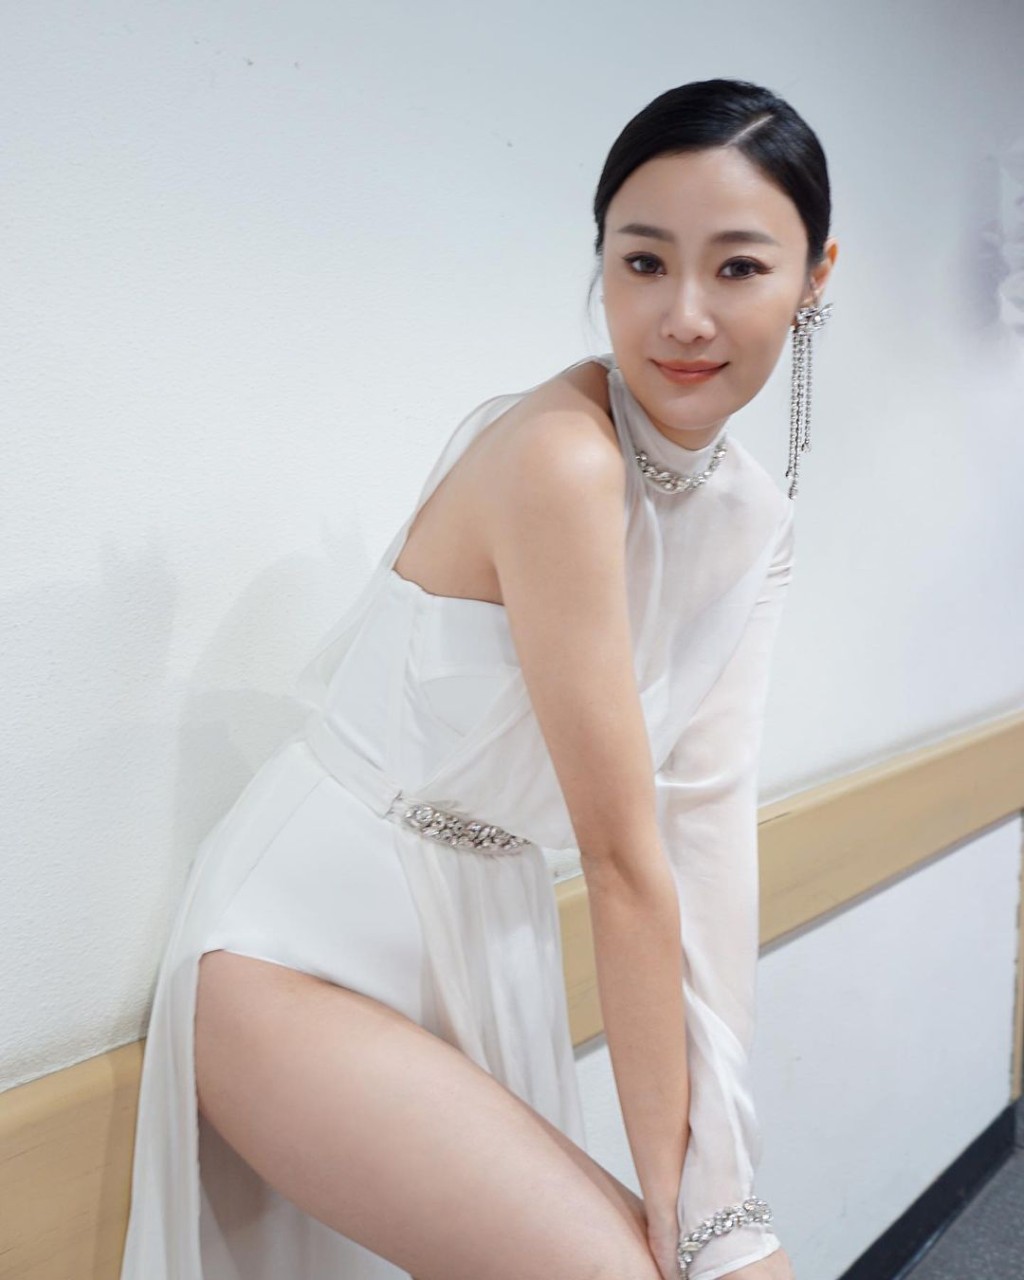 朱智贤去年出席《2022年香港小姐竞选决赛》时，靓到网民质疑「再度进化」。